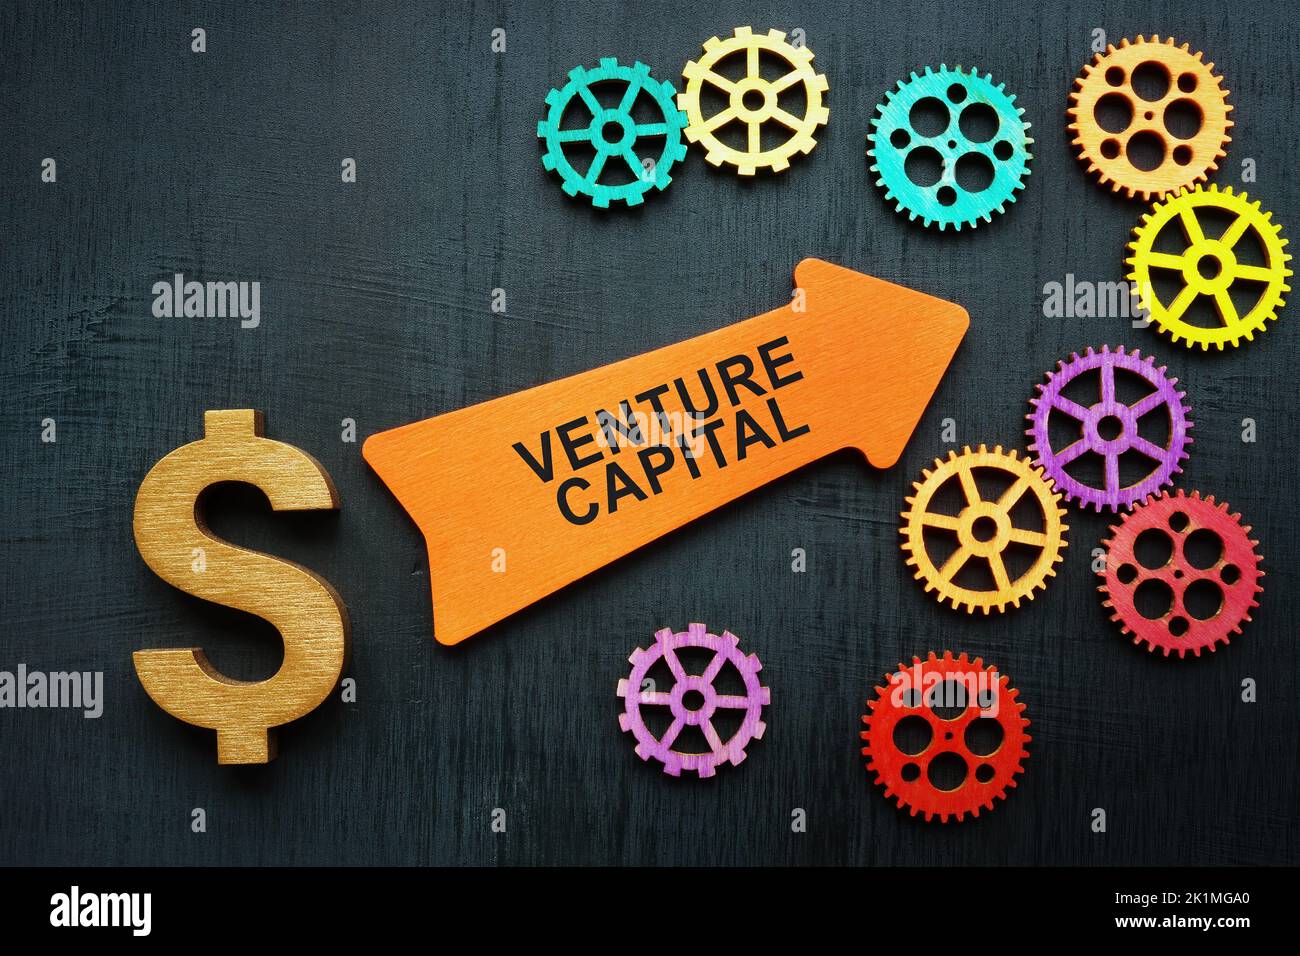 Venture Capital-Konzept. Dollarzeichen, Pfeil und Zahnräder. Stockfoto